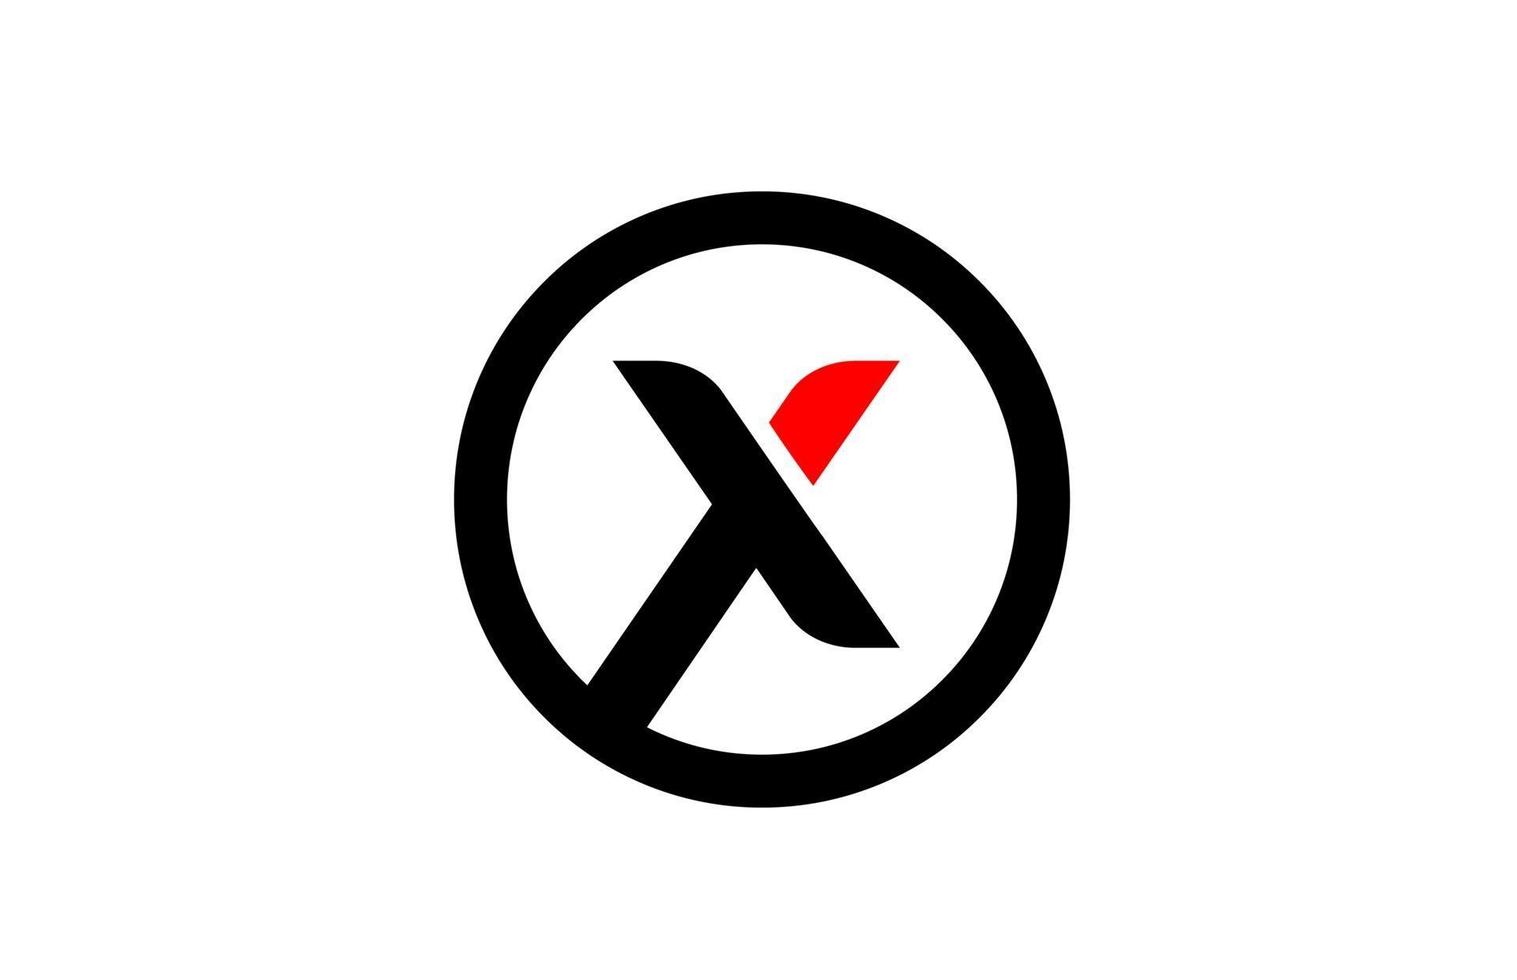 Design des Kreisalphabetbuchstabens x für das Firmenlogo-Symbol vektor